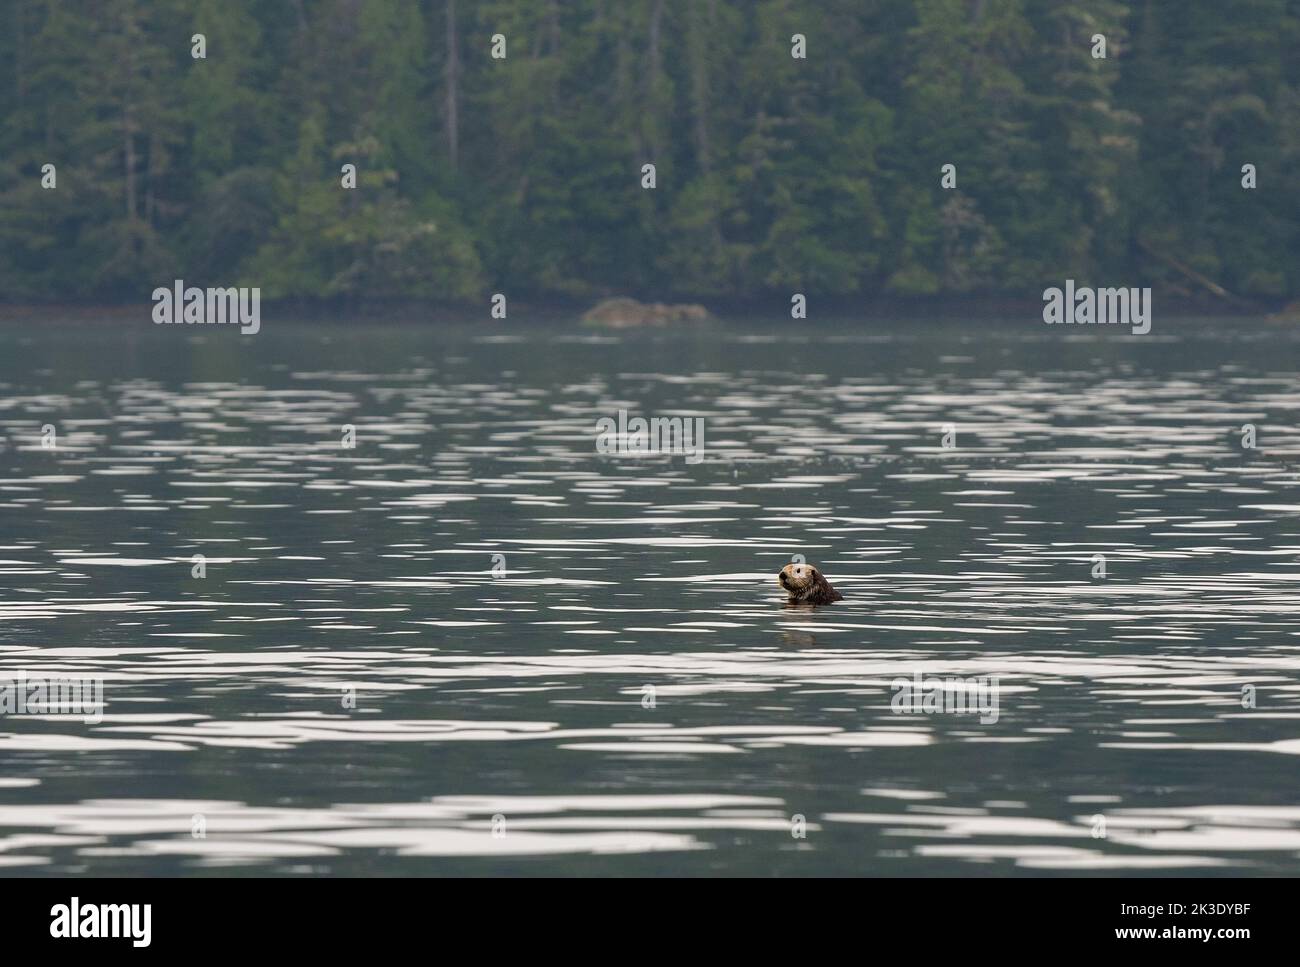 Nutria de mar (Enhydra lutris) con la cabeza fuera del agua, Tofino, Vancouver Island, British Columbia, Canadá. Enfoque en la nutria marina. Foto de stock